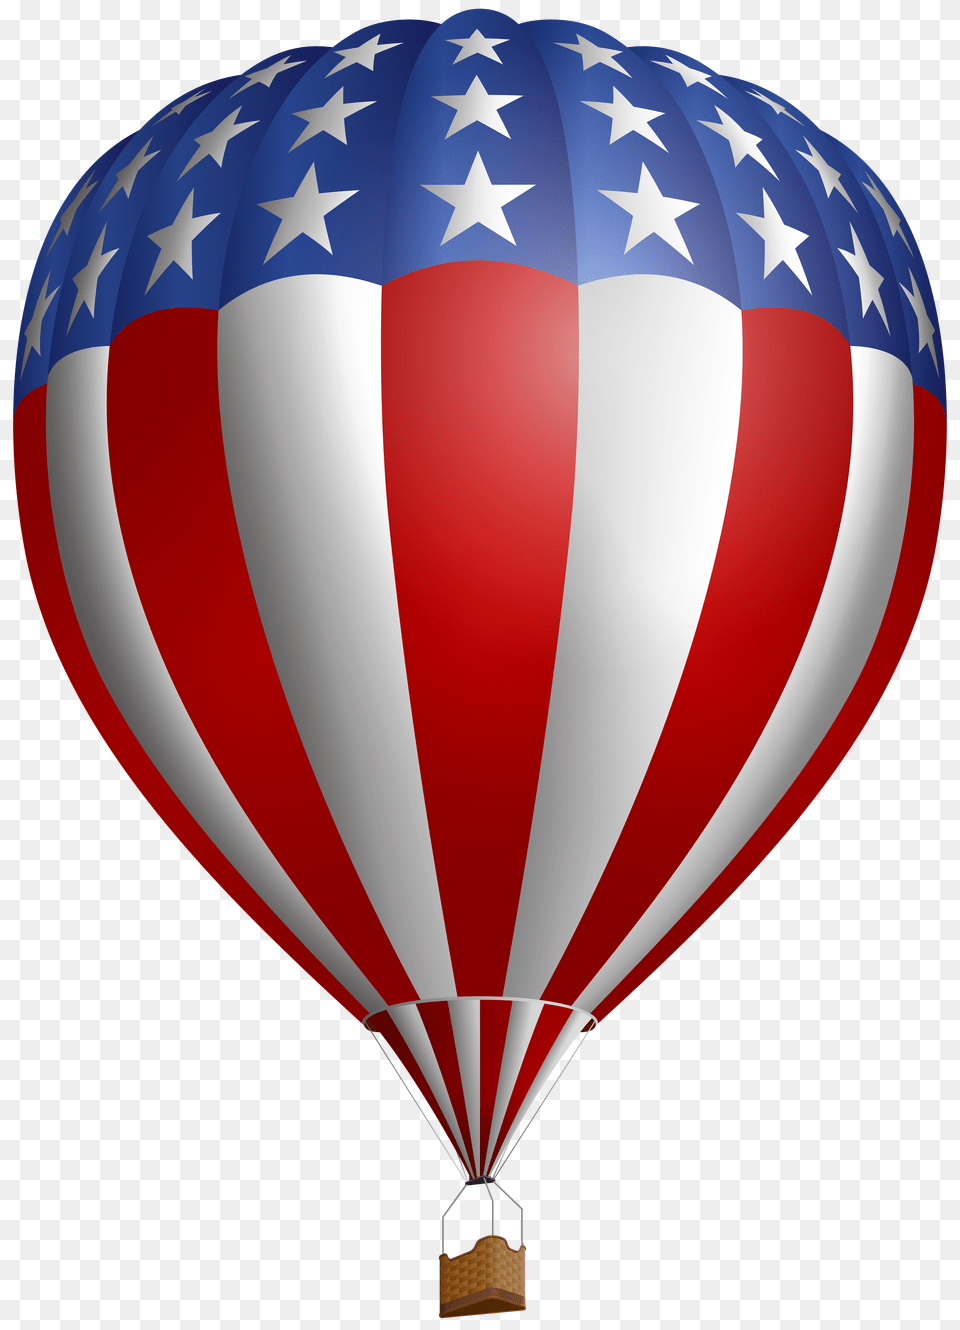 Usa Air Flag Baloon Clip Art, Aircraft, Hot Air Balloon, Transportation, Vehicle Png Image